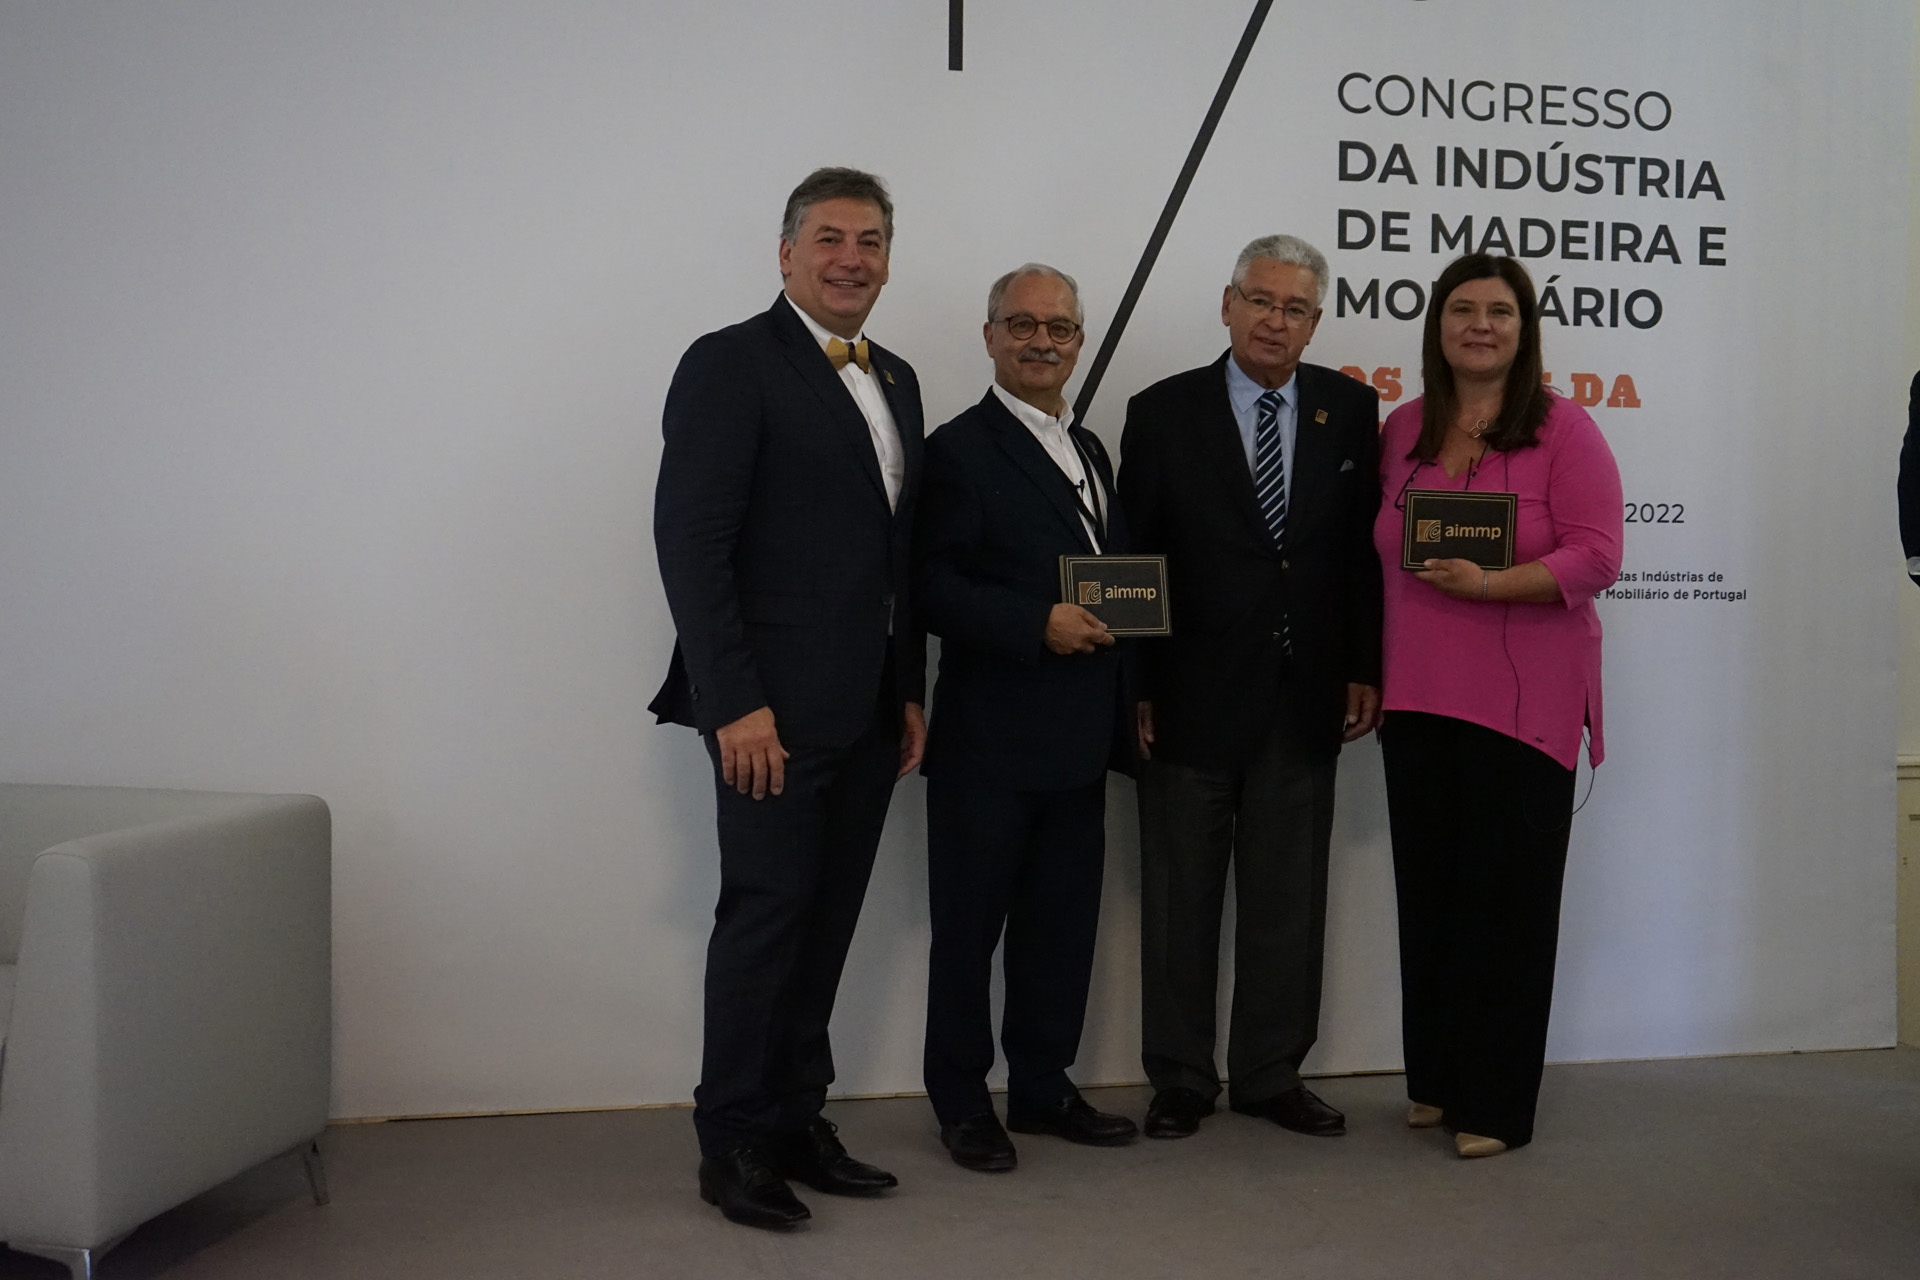 7º Congresso da Indústria de Madeira e Mobiliário